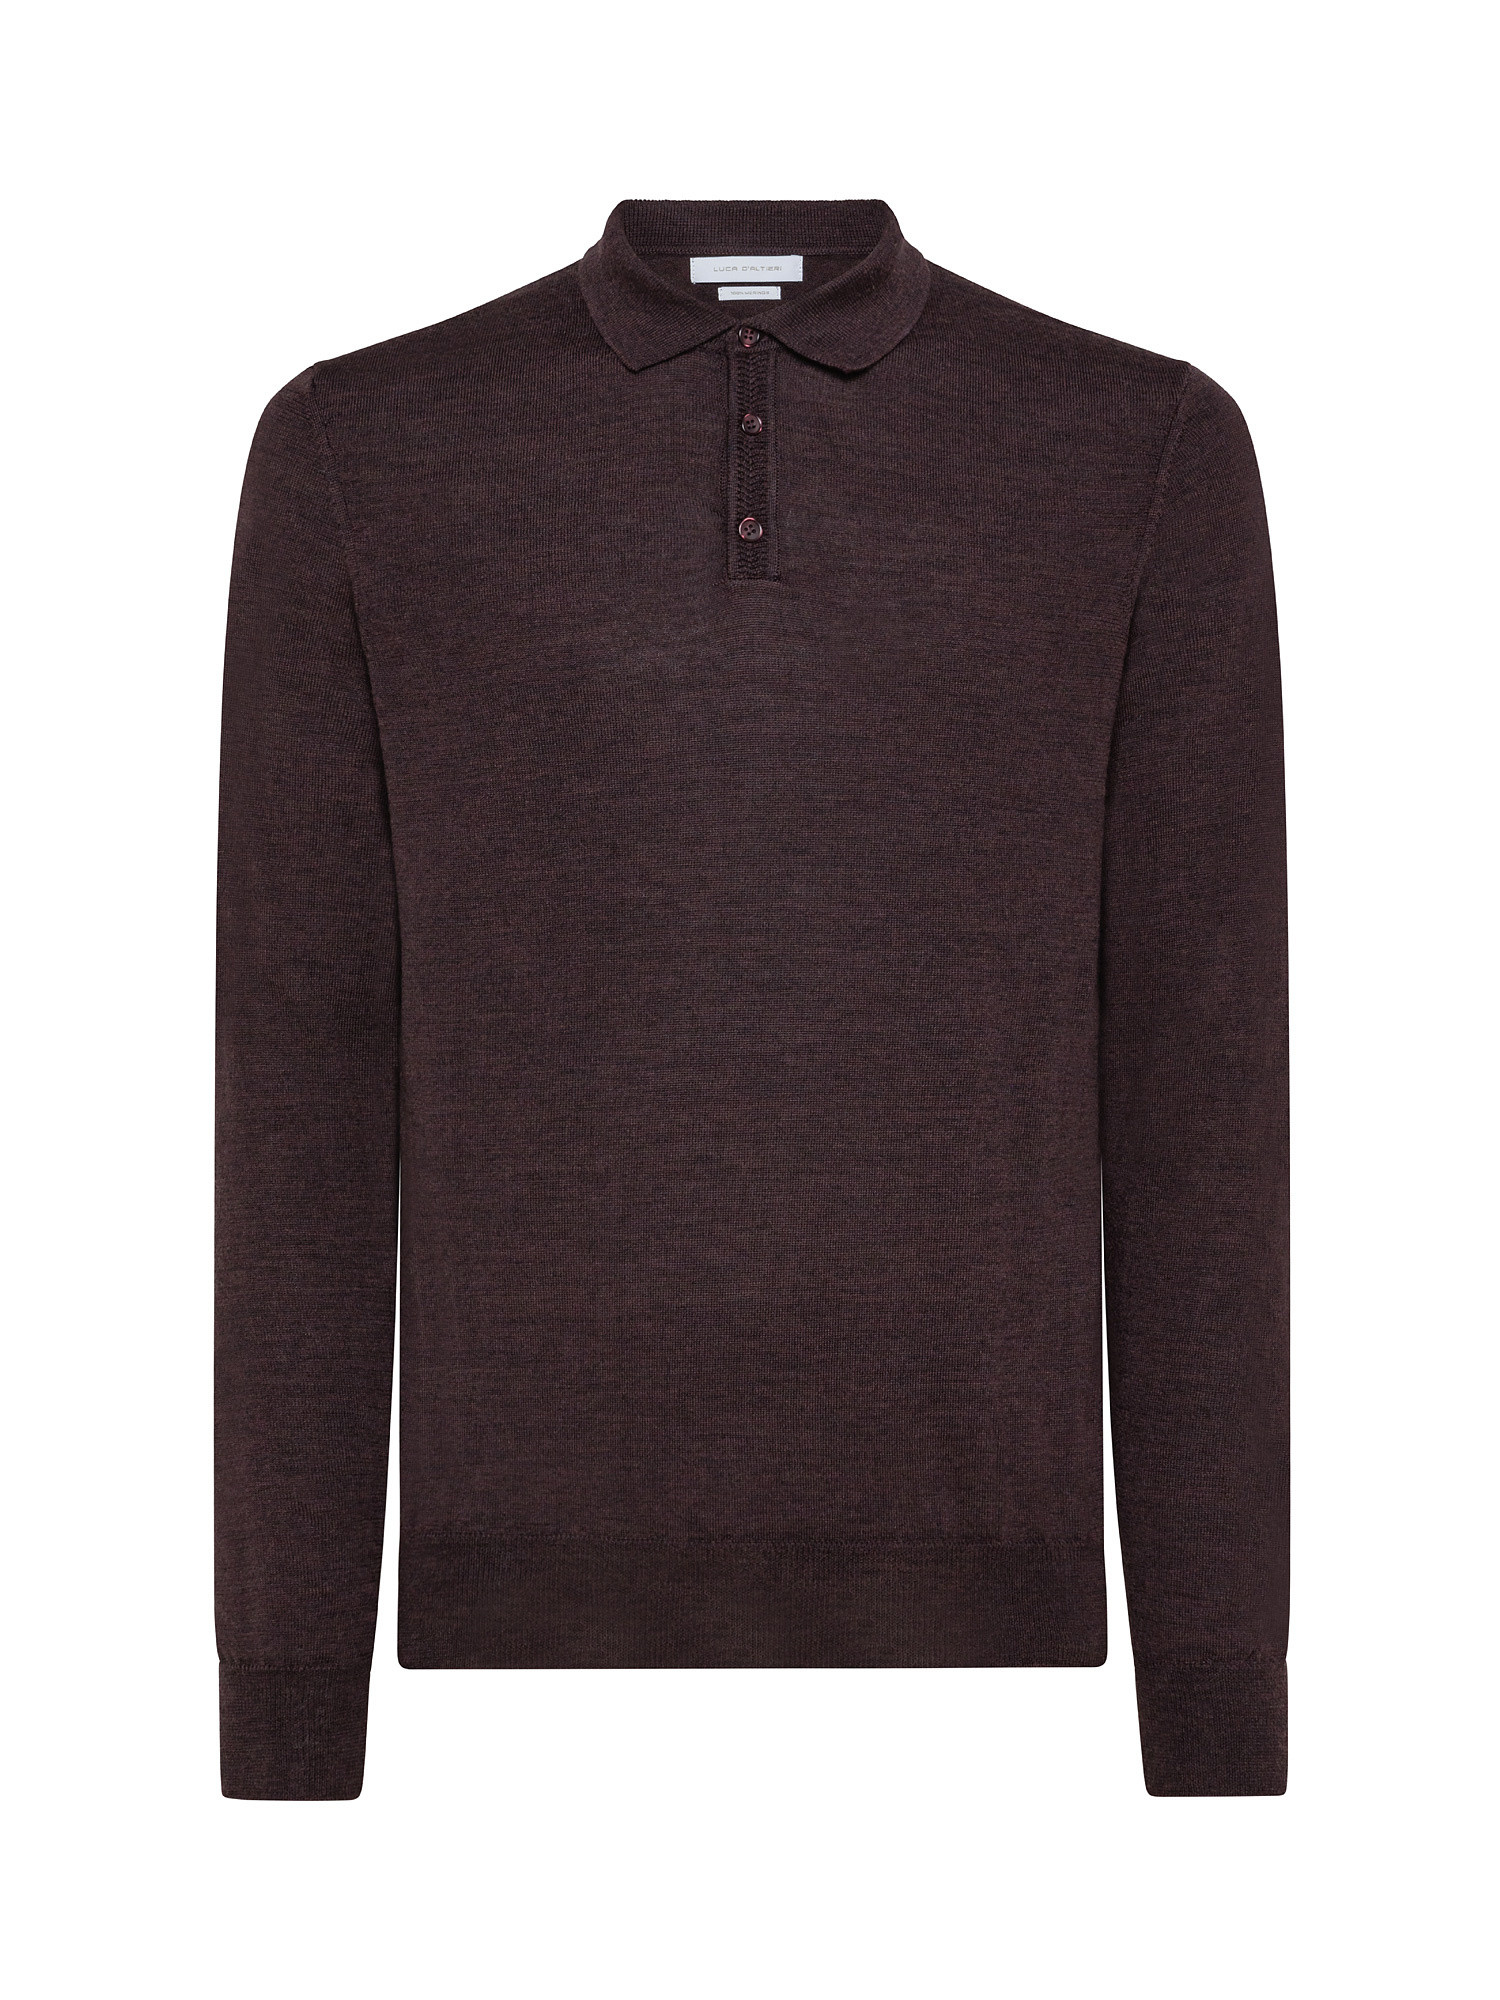 Merino wool polo shirt, Brown, large image number 0